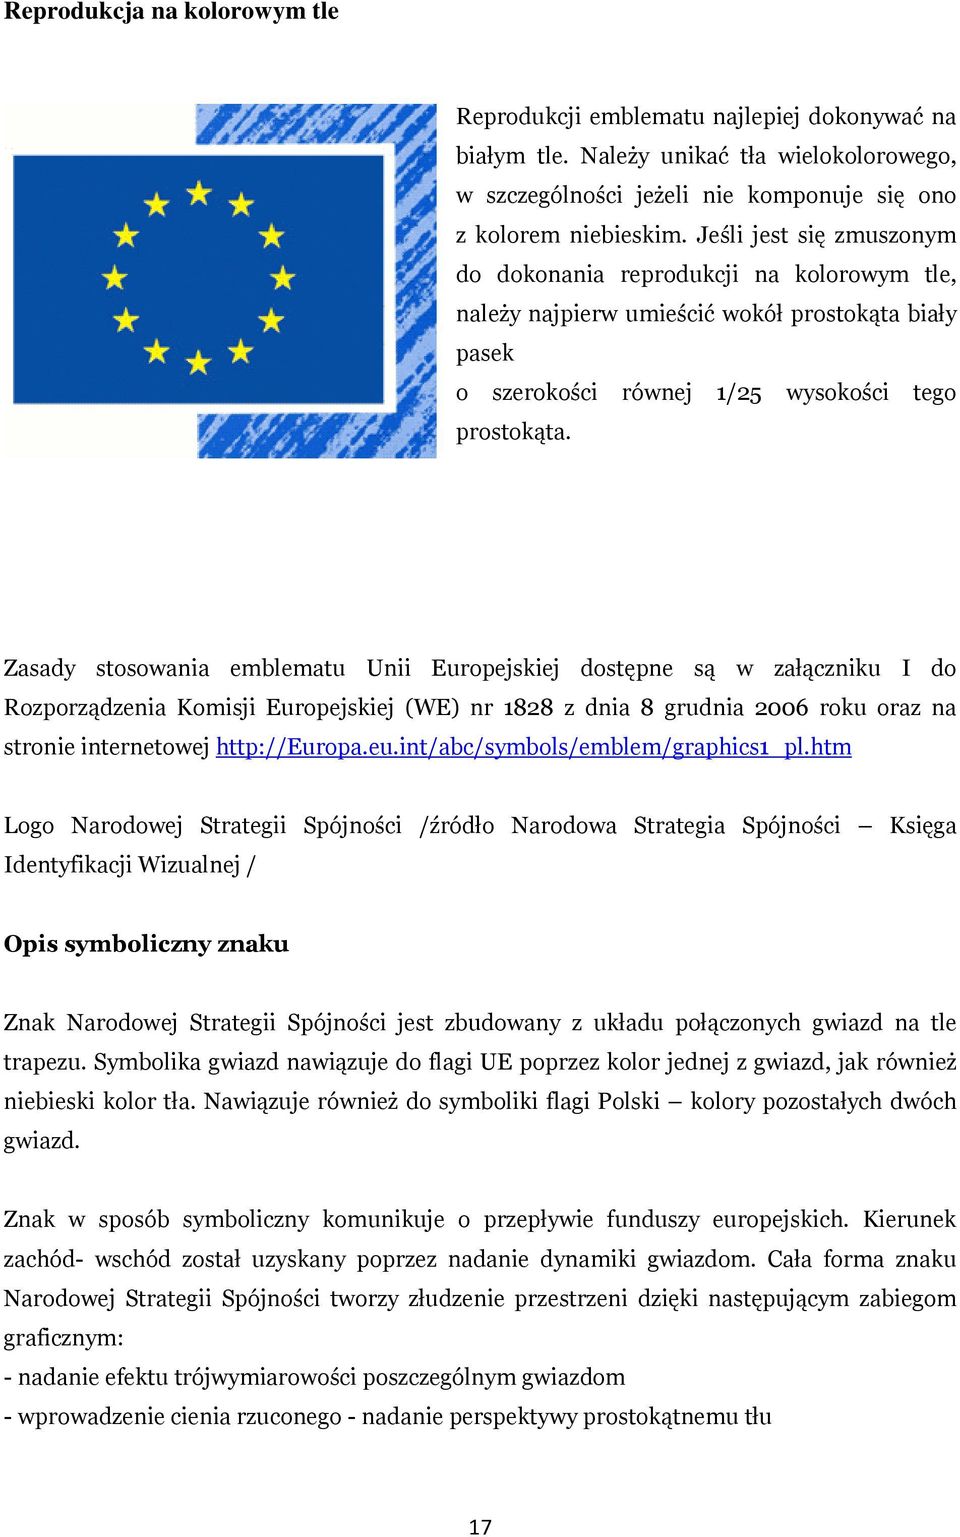 Zasady stosowania emblematu Unii Europejskiej dostępne są w załączniku I do Rozporządzenia Komisji Europejskiej (WE) nr 1828 z dnia 8 grudnia 2006 roku oraz na stronie internetowej http://eur